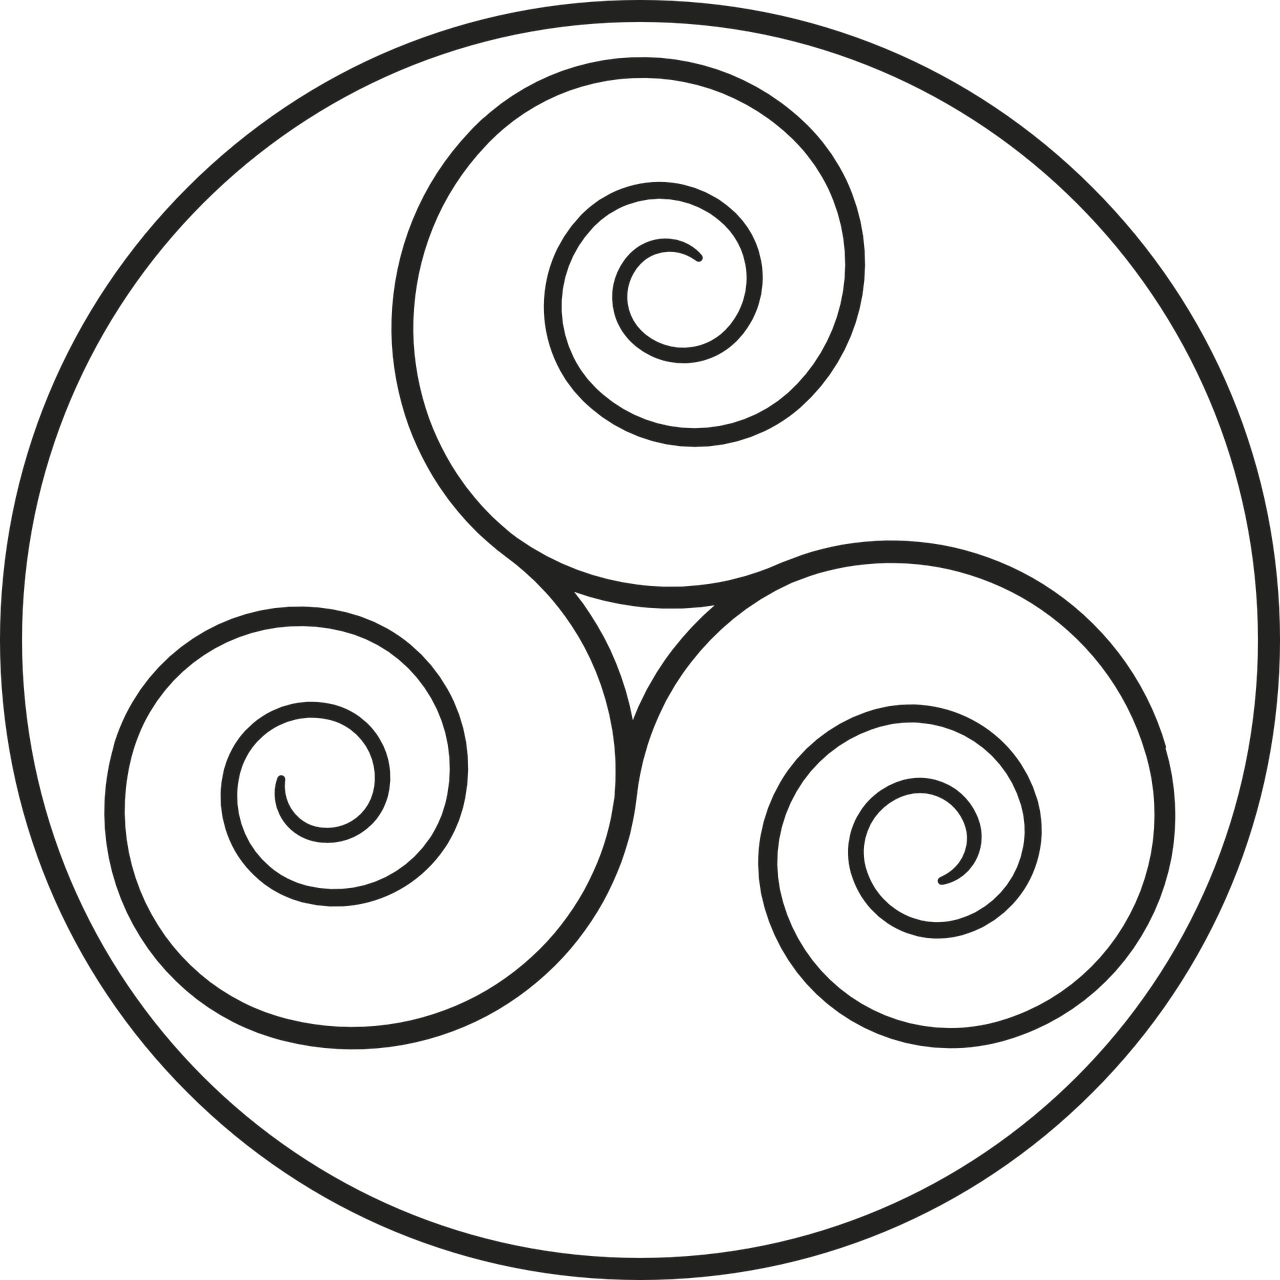 irish sister symbols